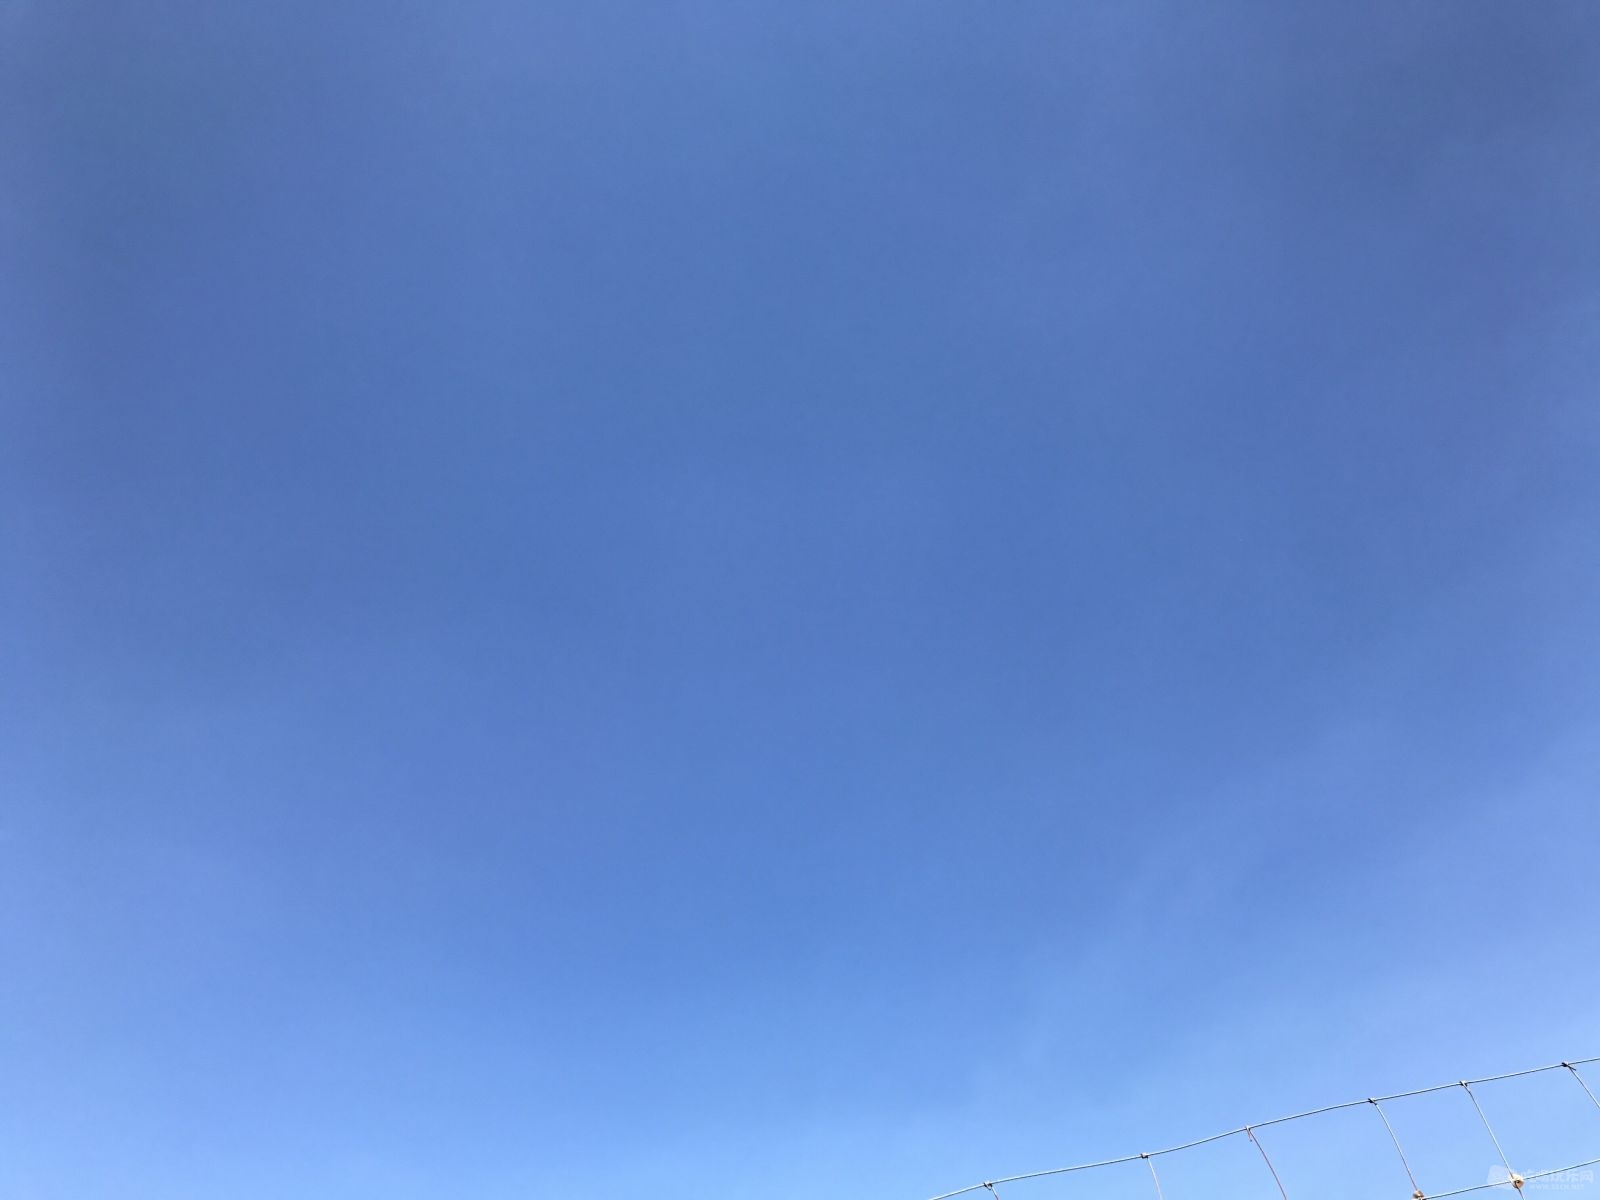 蓝蓝的天空